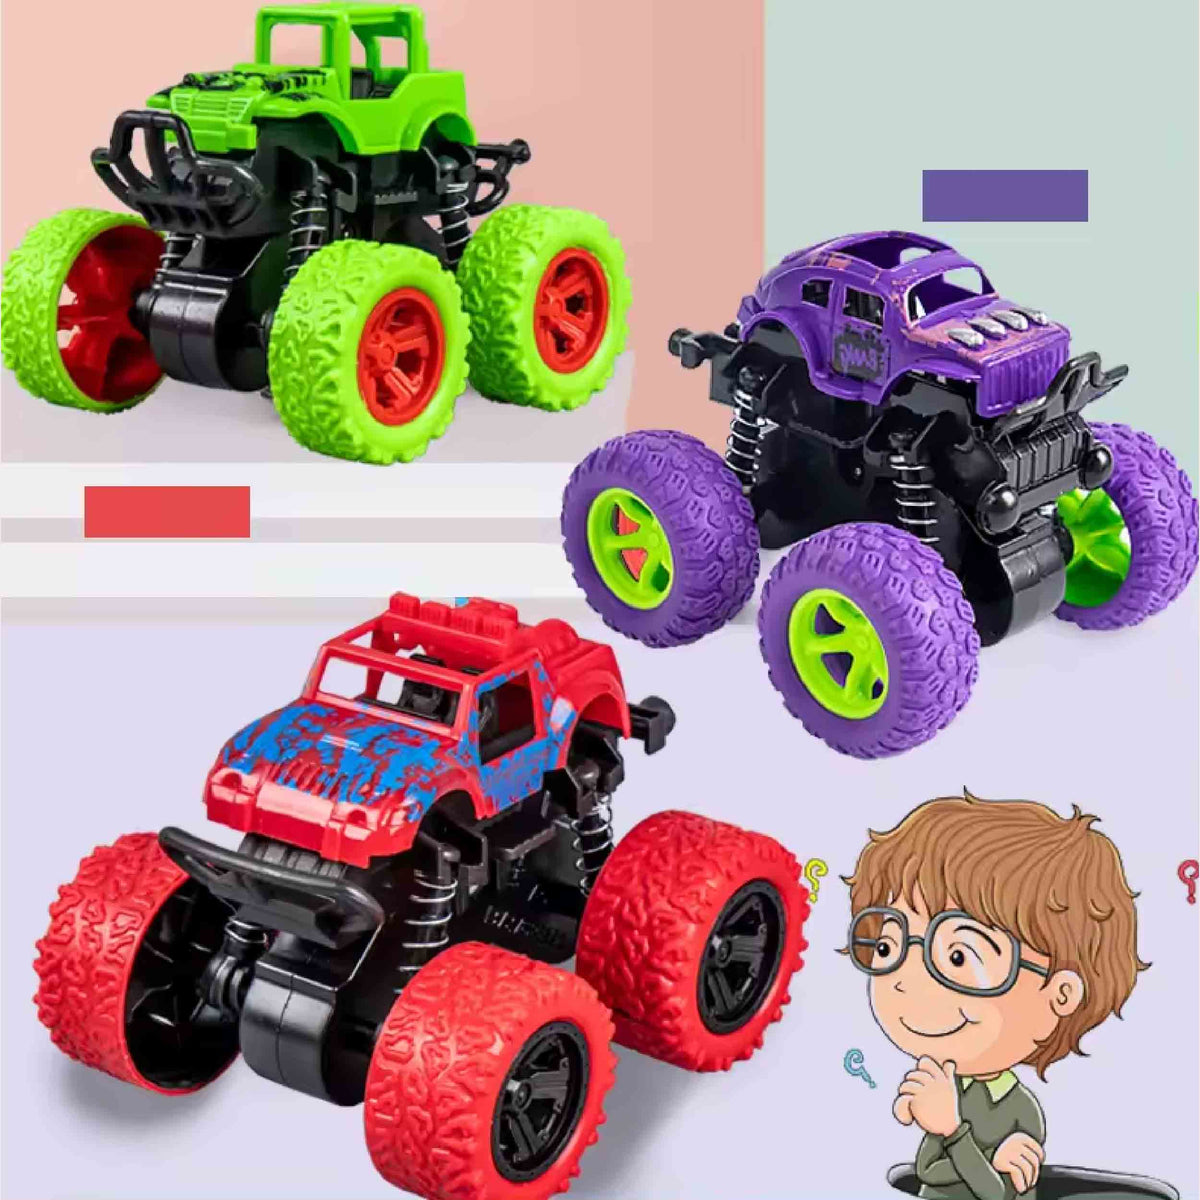 Monster Trucks for Kids Toys In Bulk - Assorted